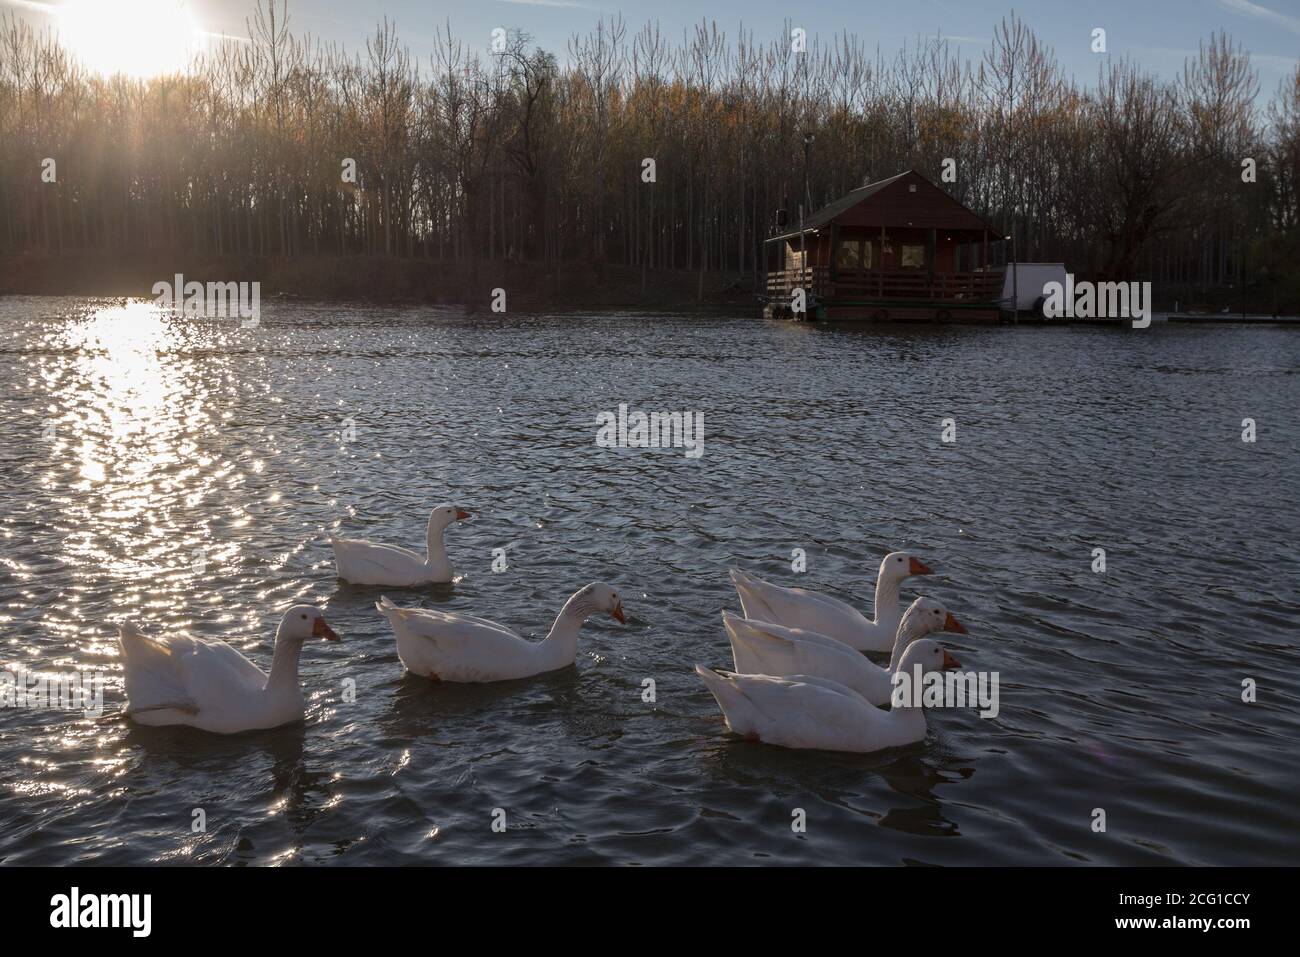 Groupe de canards blancs natation sur la rivière Cédric Deniaud Reka dans le centre-ville de Pancevo, une des plus grandes villes de la région de Banat, en Voïvodine, Serbe Banque D'Images